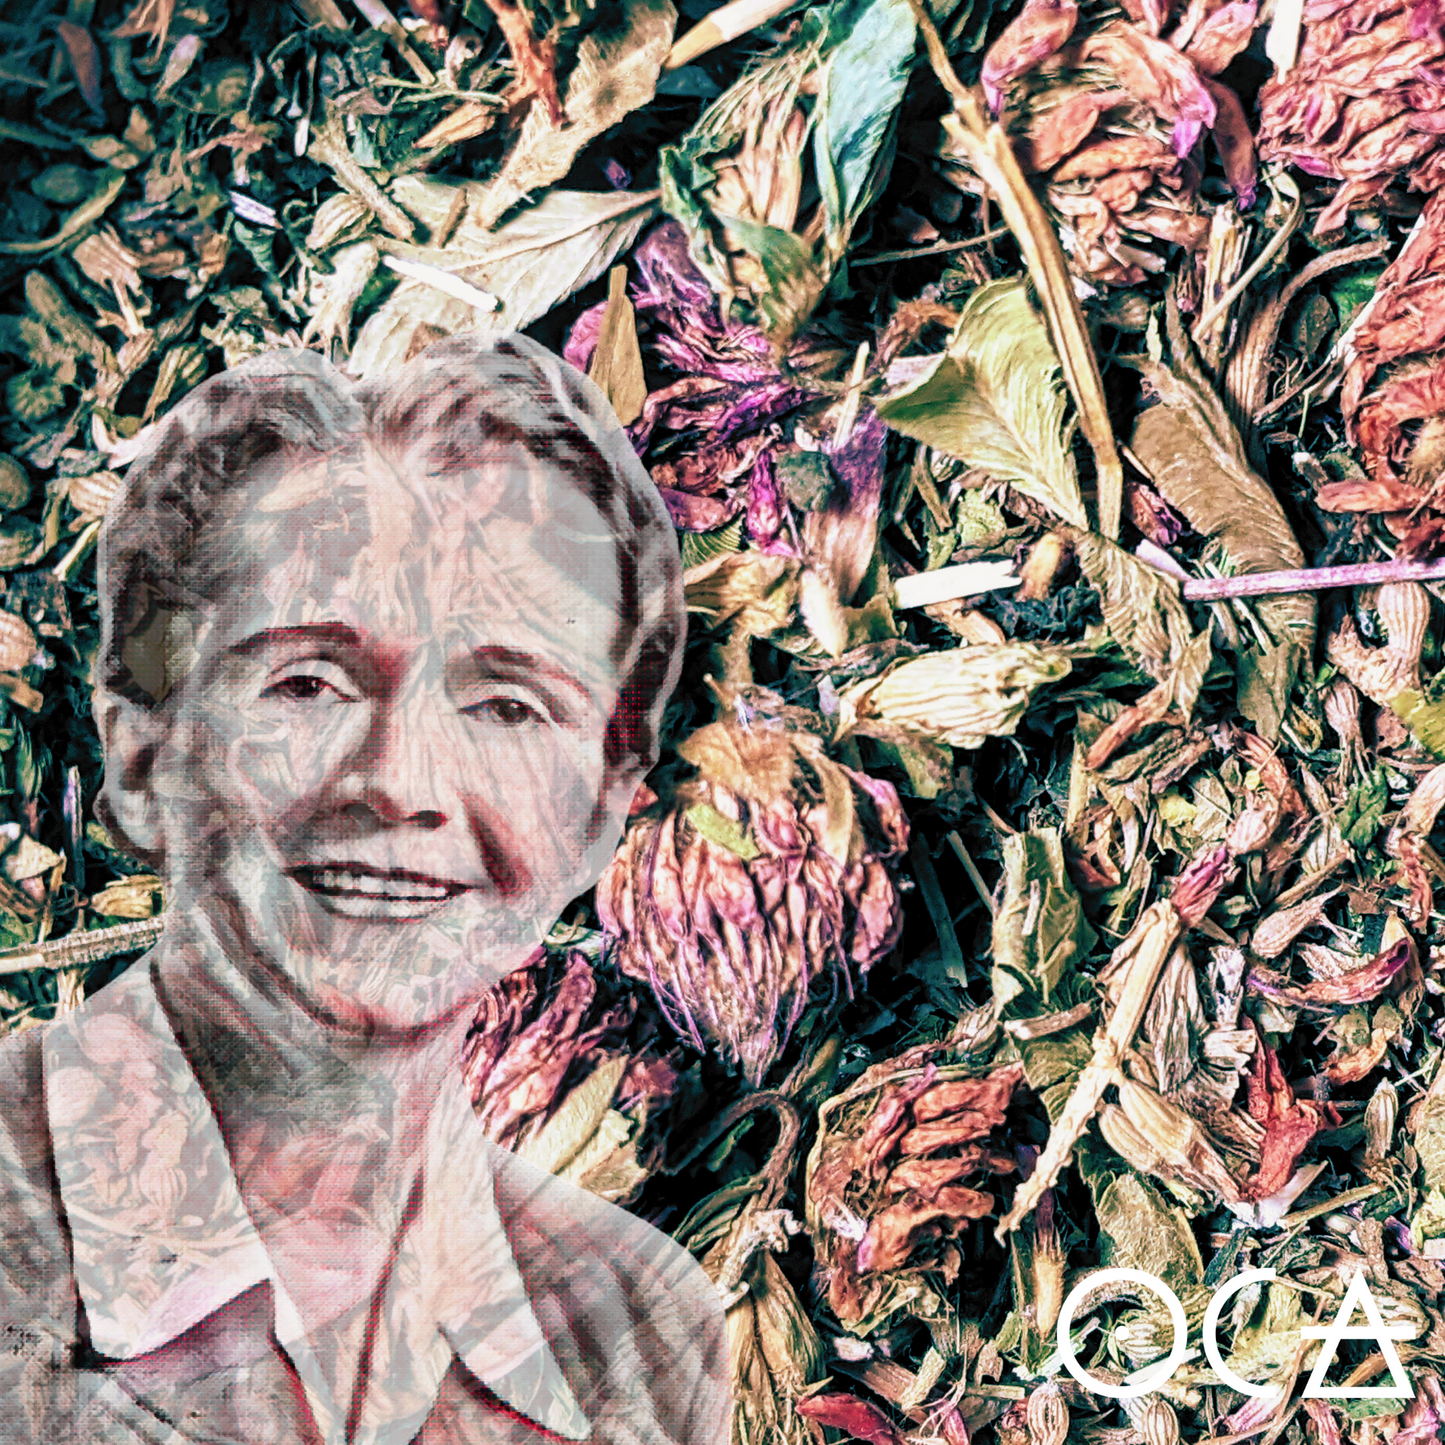 Rachel CarsonTea (An Herbal Ode to the Queen of Spring)